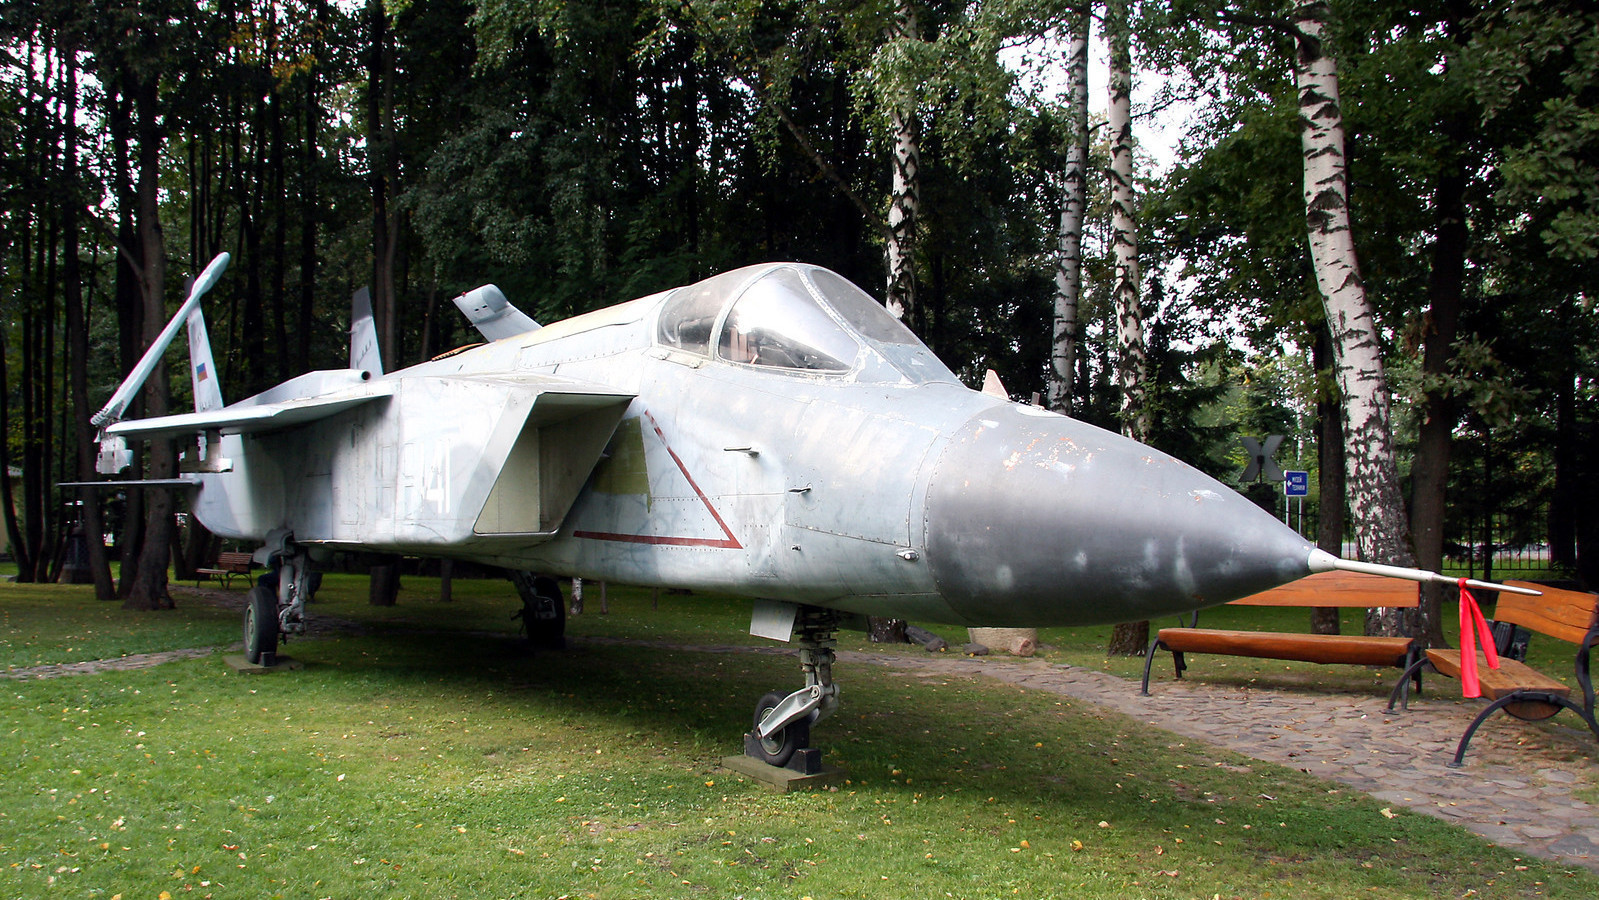 Јак-141 во музејот на Вадим Задорожни

